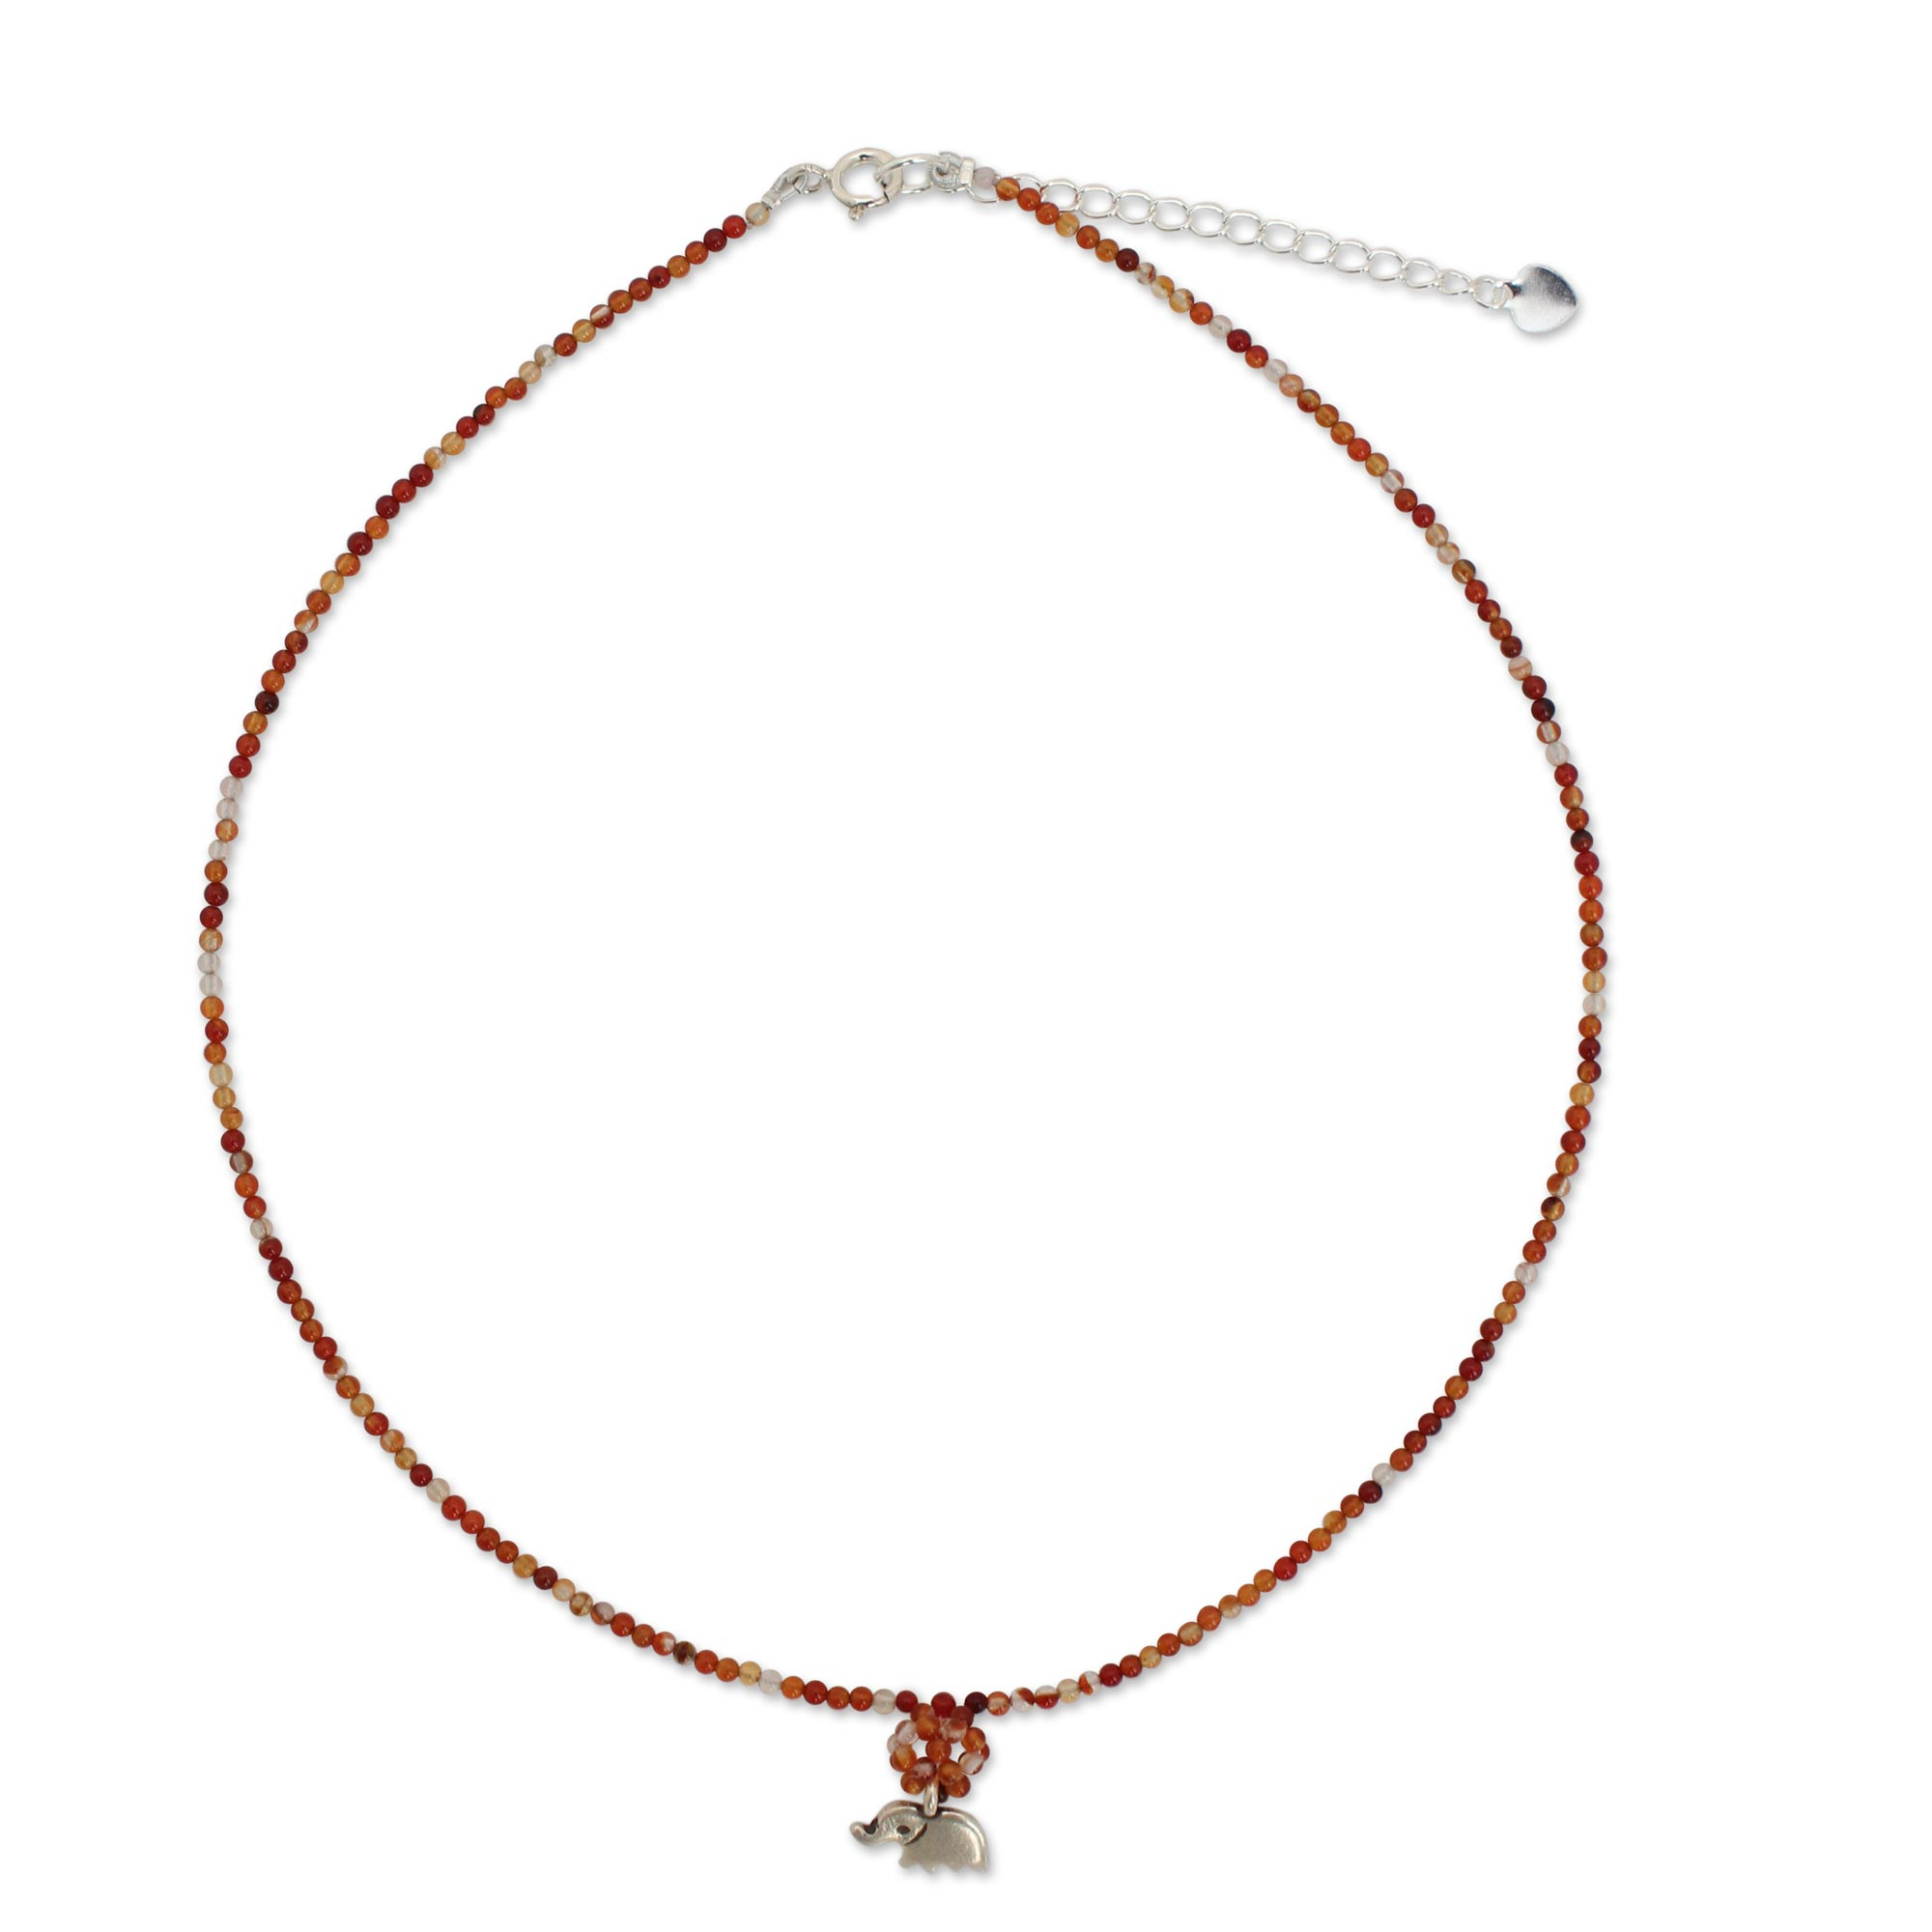 Hand Made Beaded Carnelian Necklace - Elephantine Charm | NOVICA